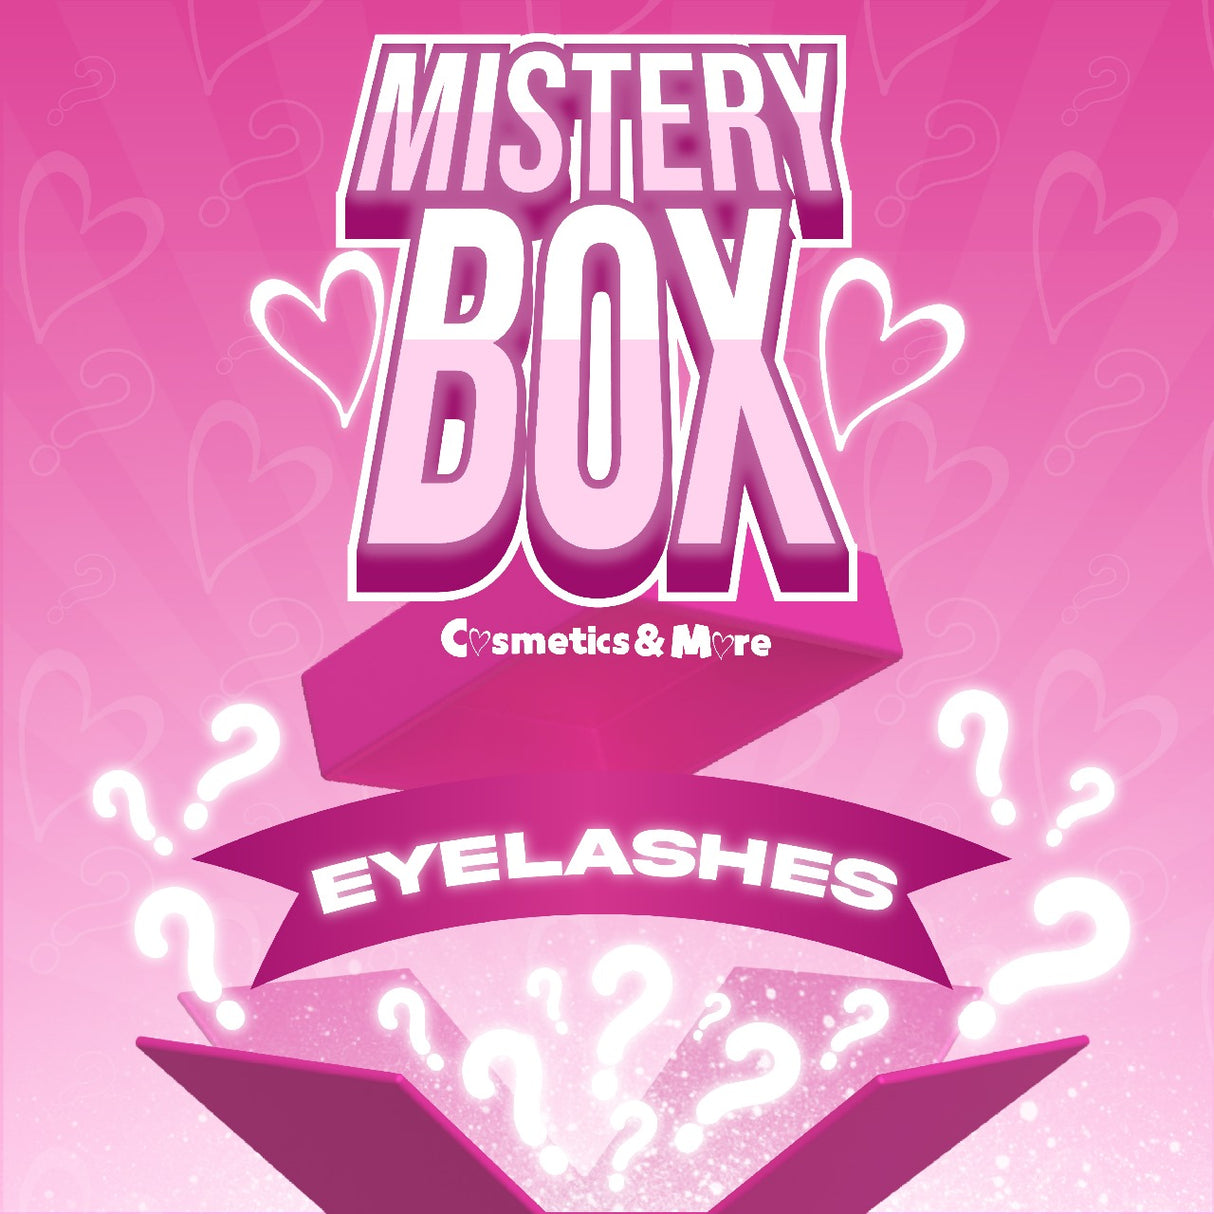 EYELASHES MYSTERY BOX